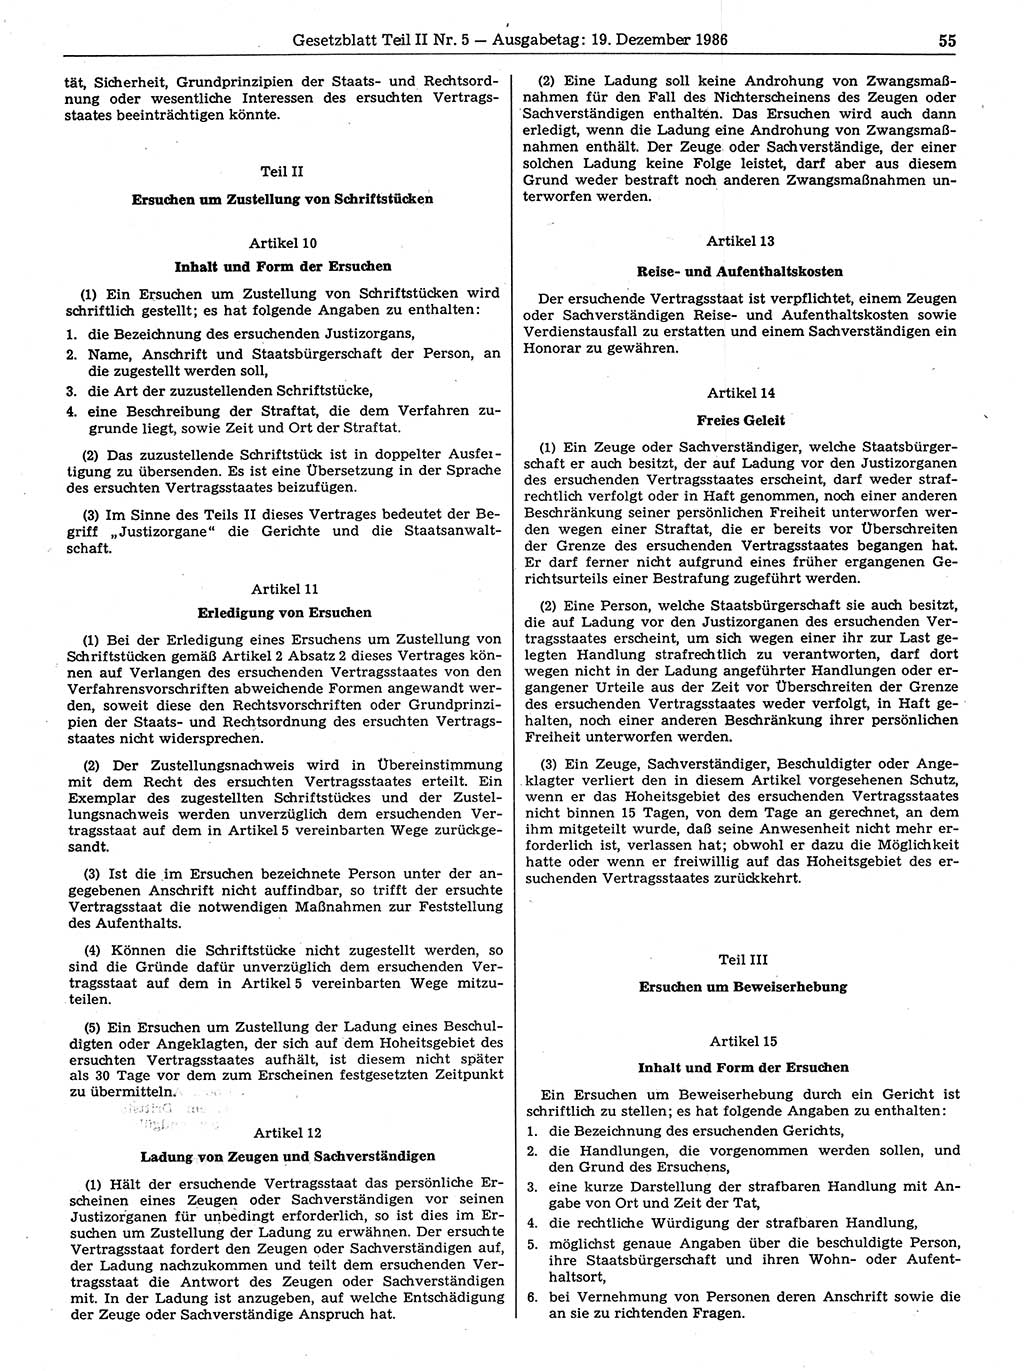 Gesetzblatt (GBl.) der Deutschen Demokratischen Republik (DDR) Teil ⅠⅠ 1986, Seite 55 (GBl. DDR ⅠⅠ 1986, S. 55)